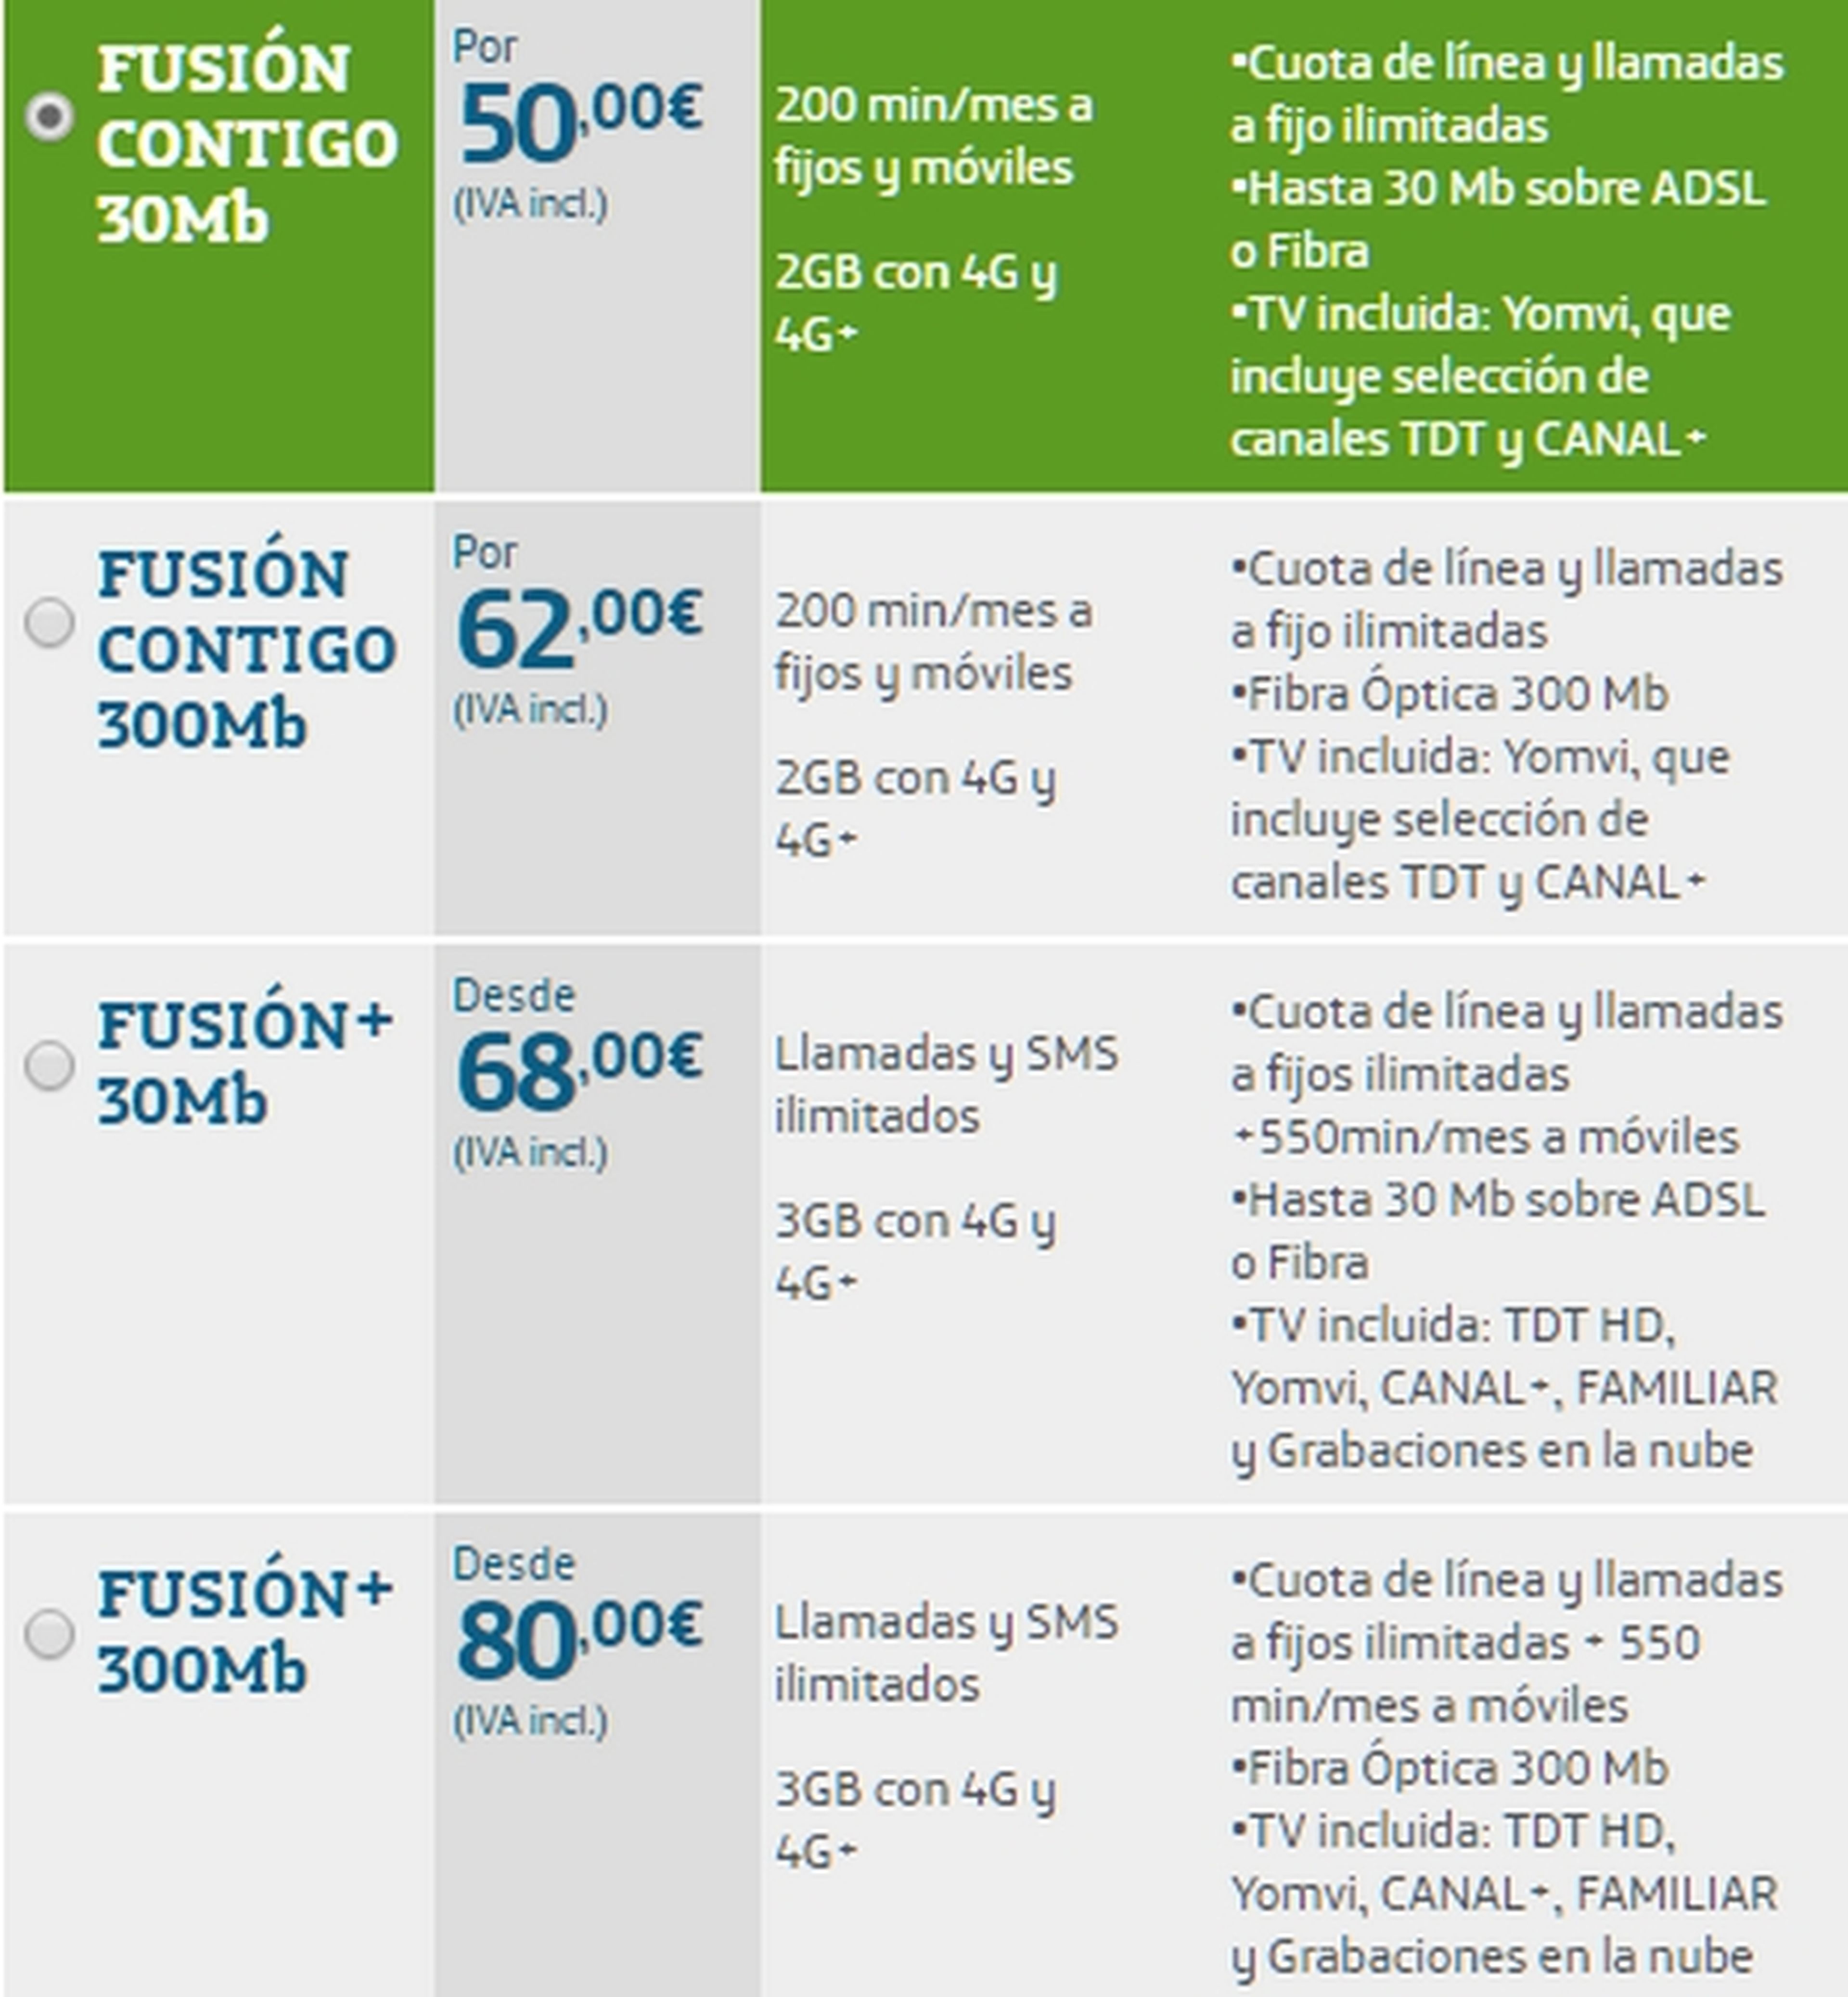 Precio y tarifas del iPhone SE con Movistar